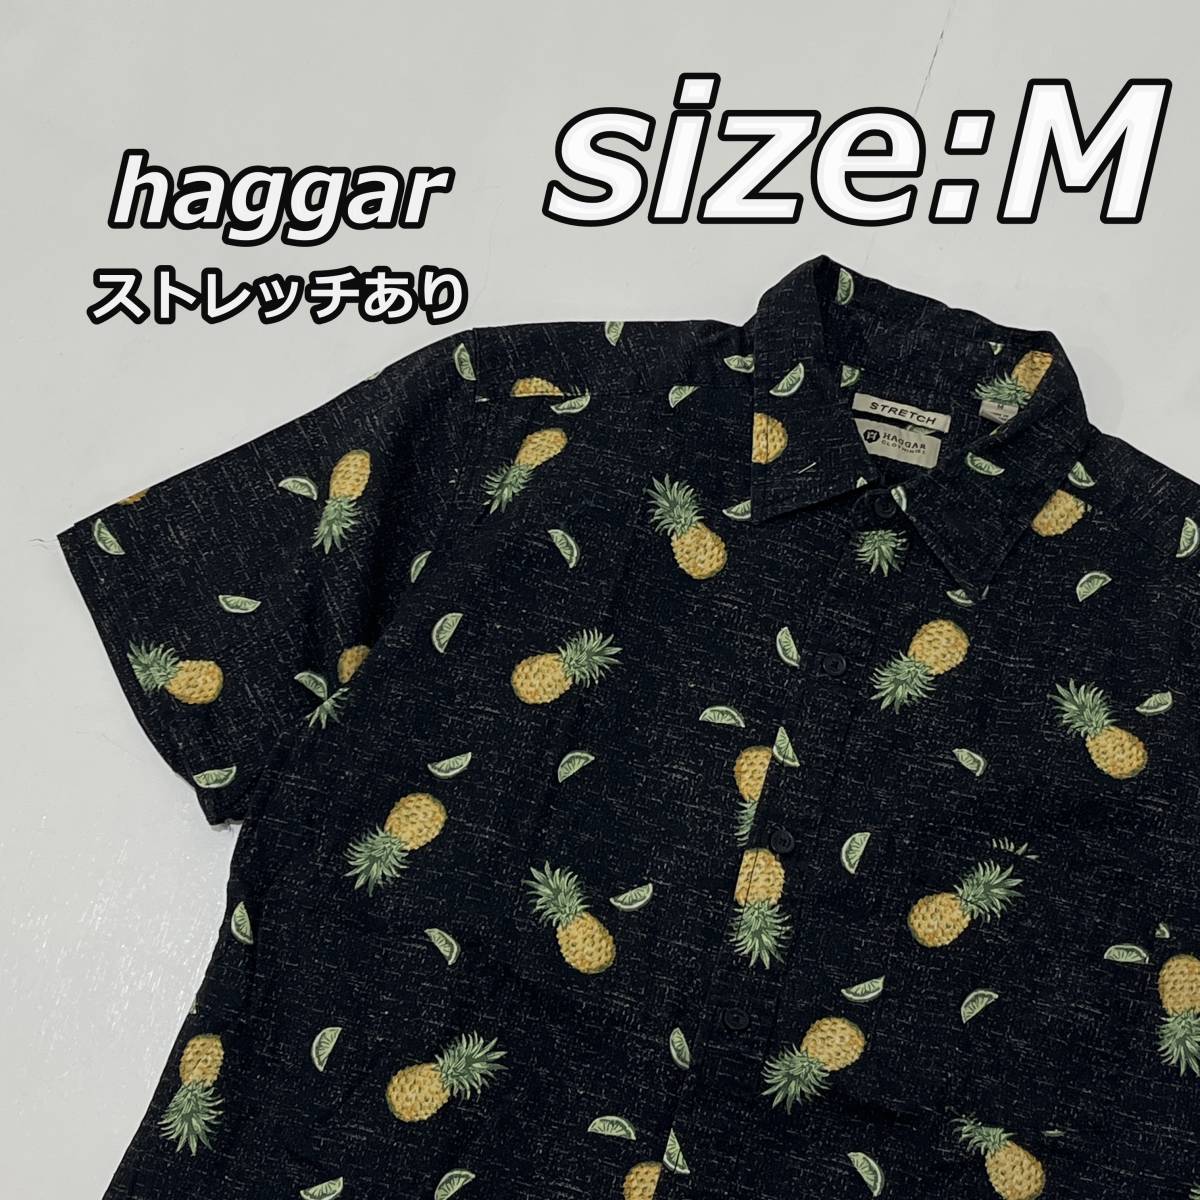 size:M【haggar】パイナップル柄 アロハシャツ ハワイアン ストレッチあり 黒 ブラック_画像1